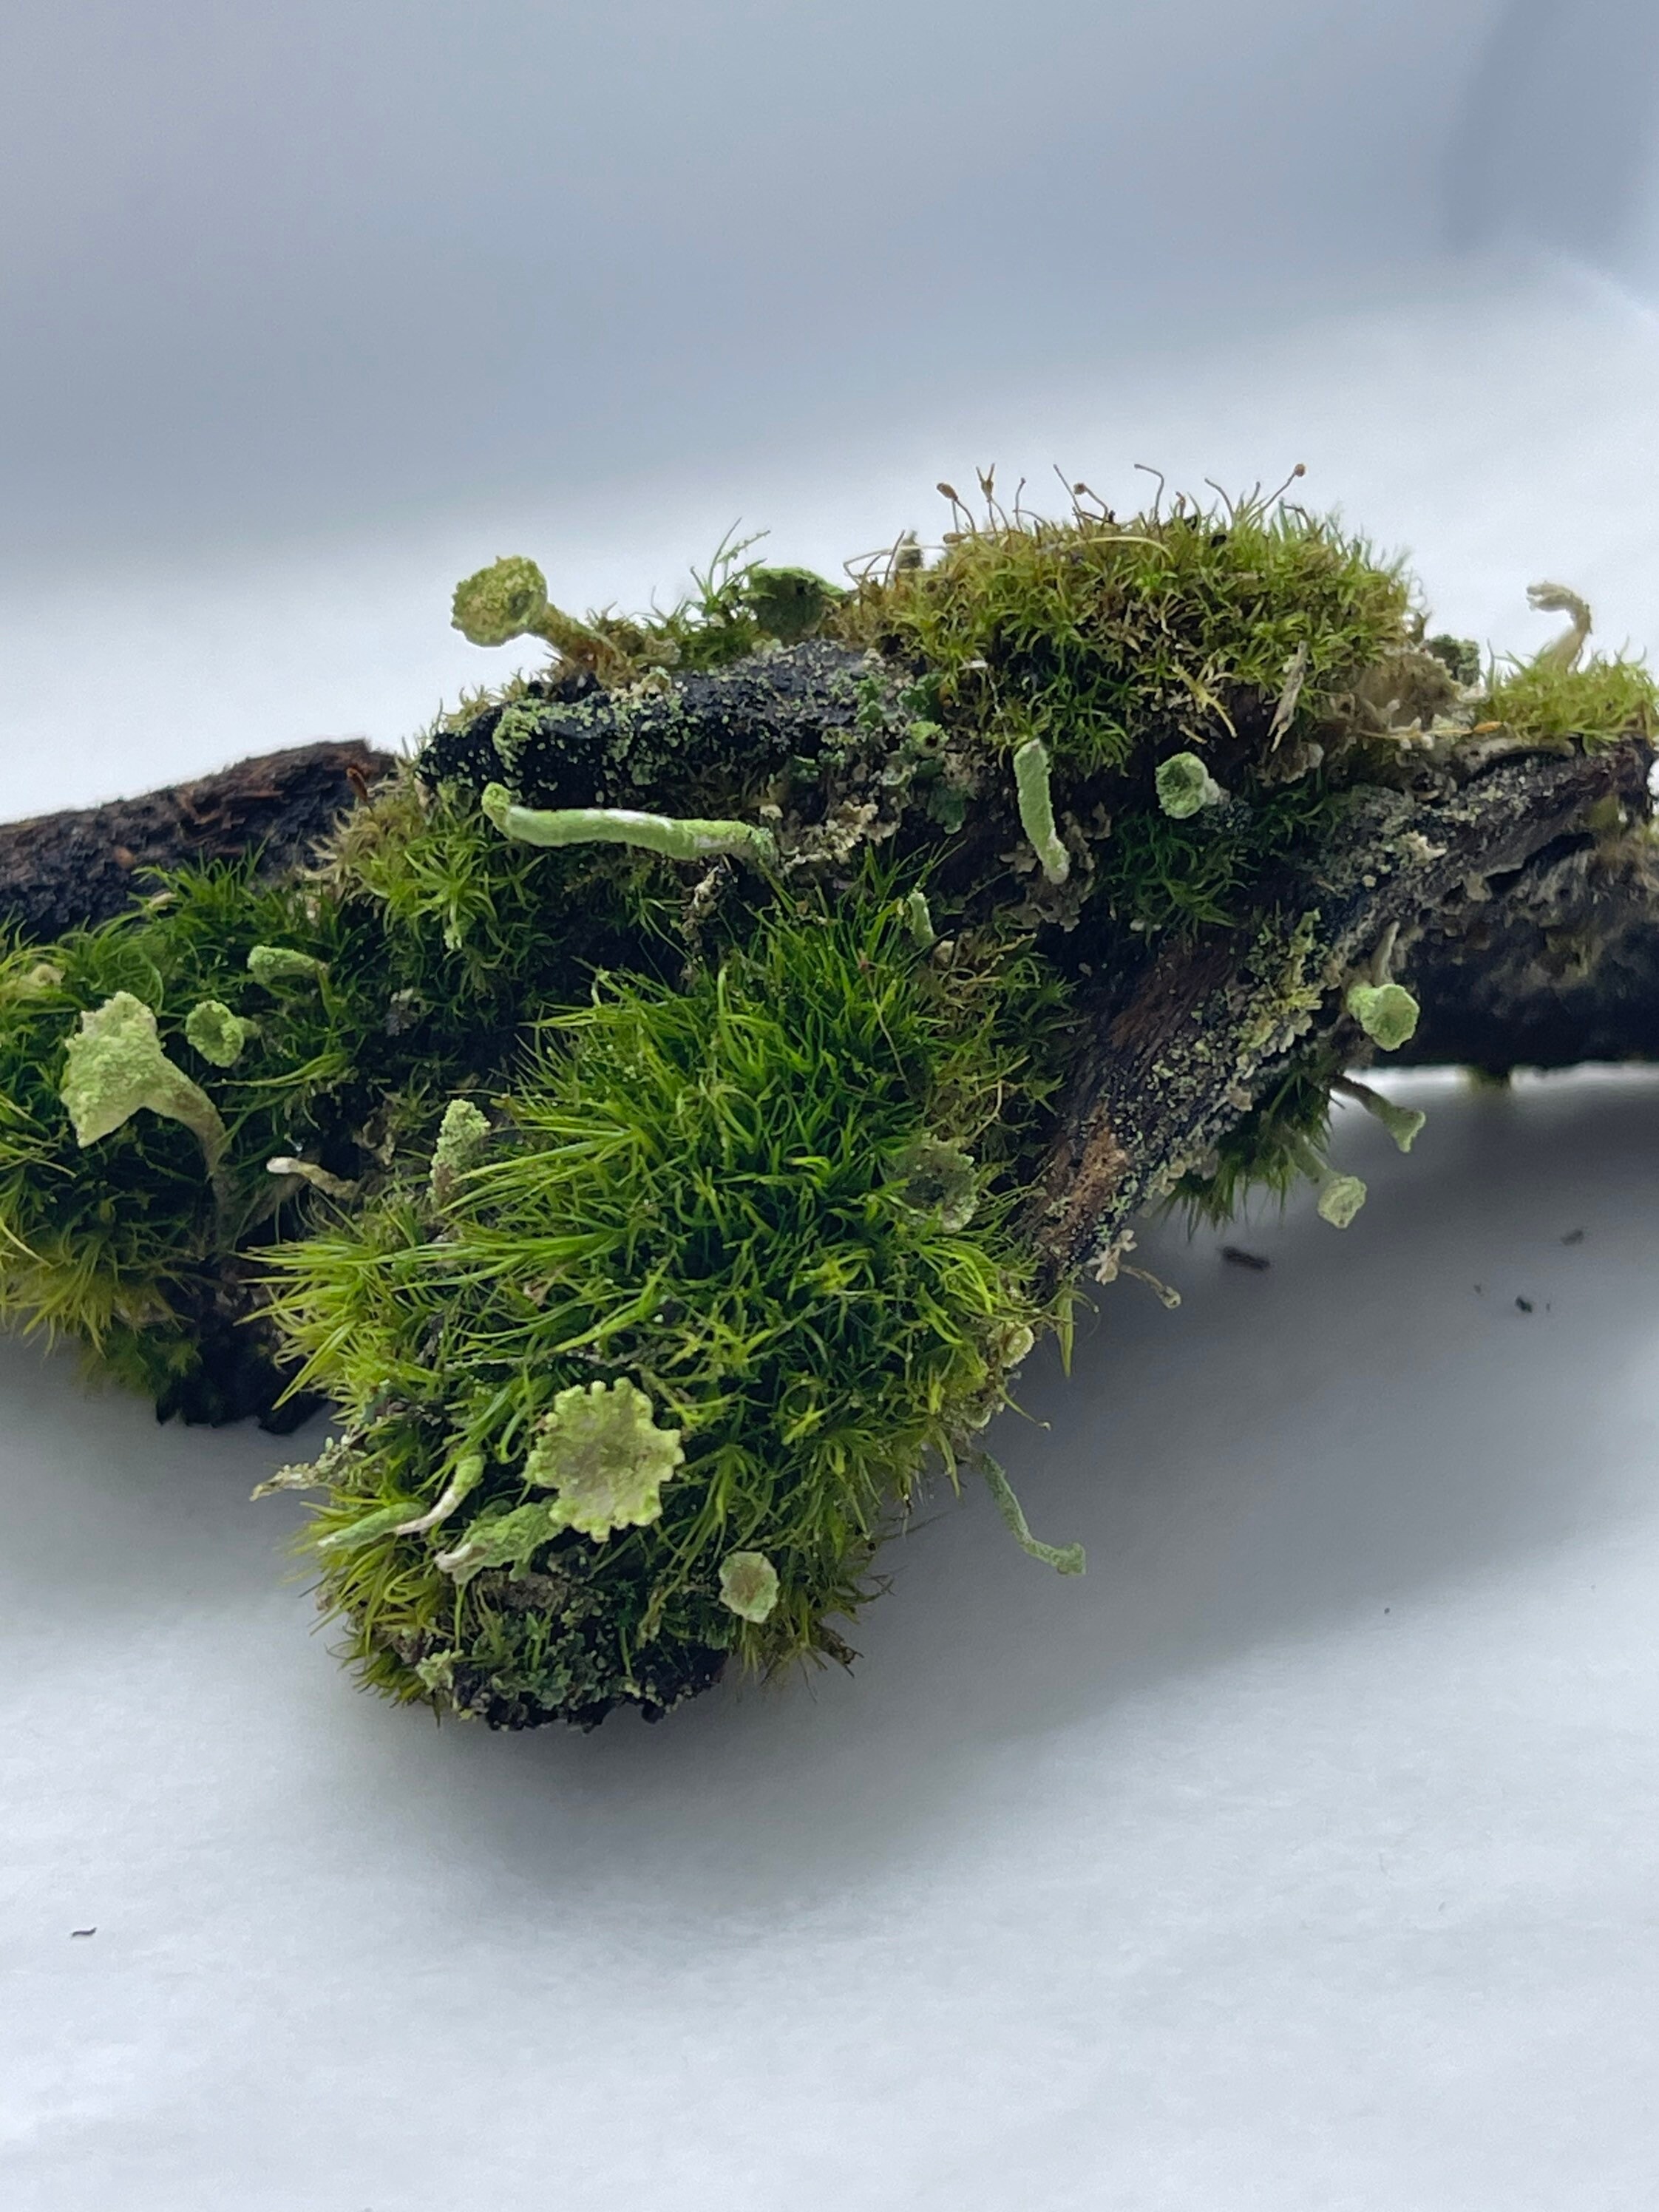 Tree Moss climacium Americanum / Dendroides Rare Live Moss for Terrarium, Terrarium  Moss, Live Moss for DIY Terrarium 